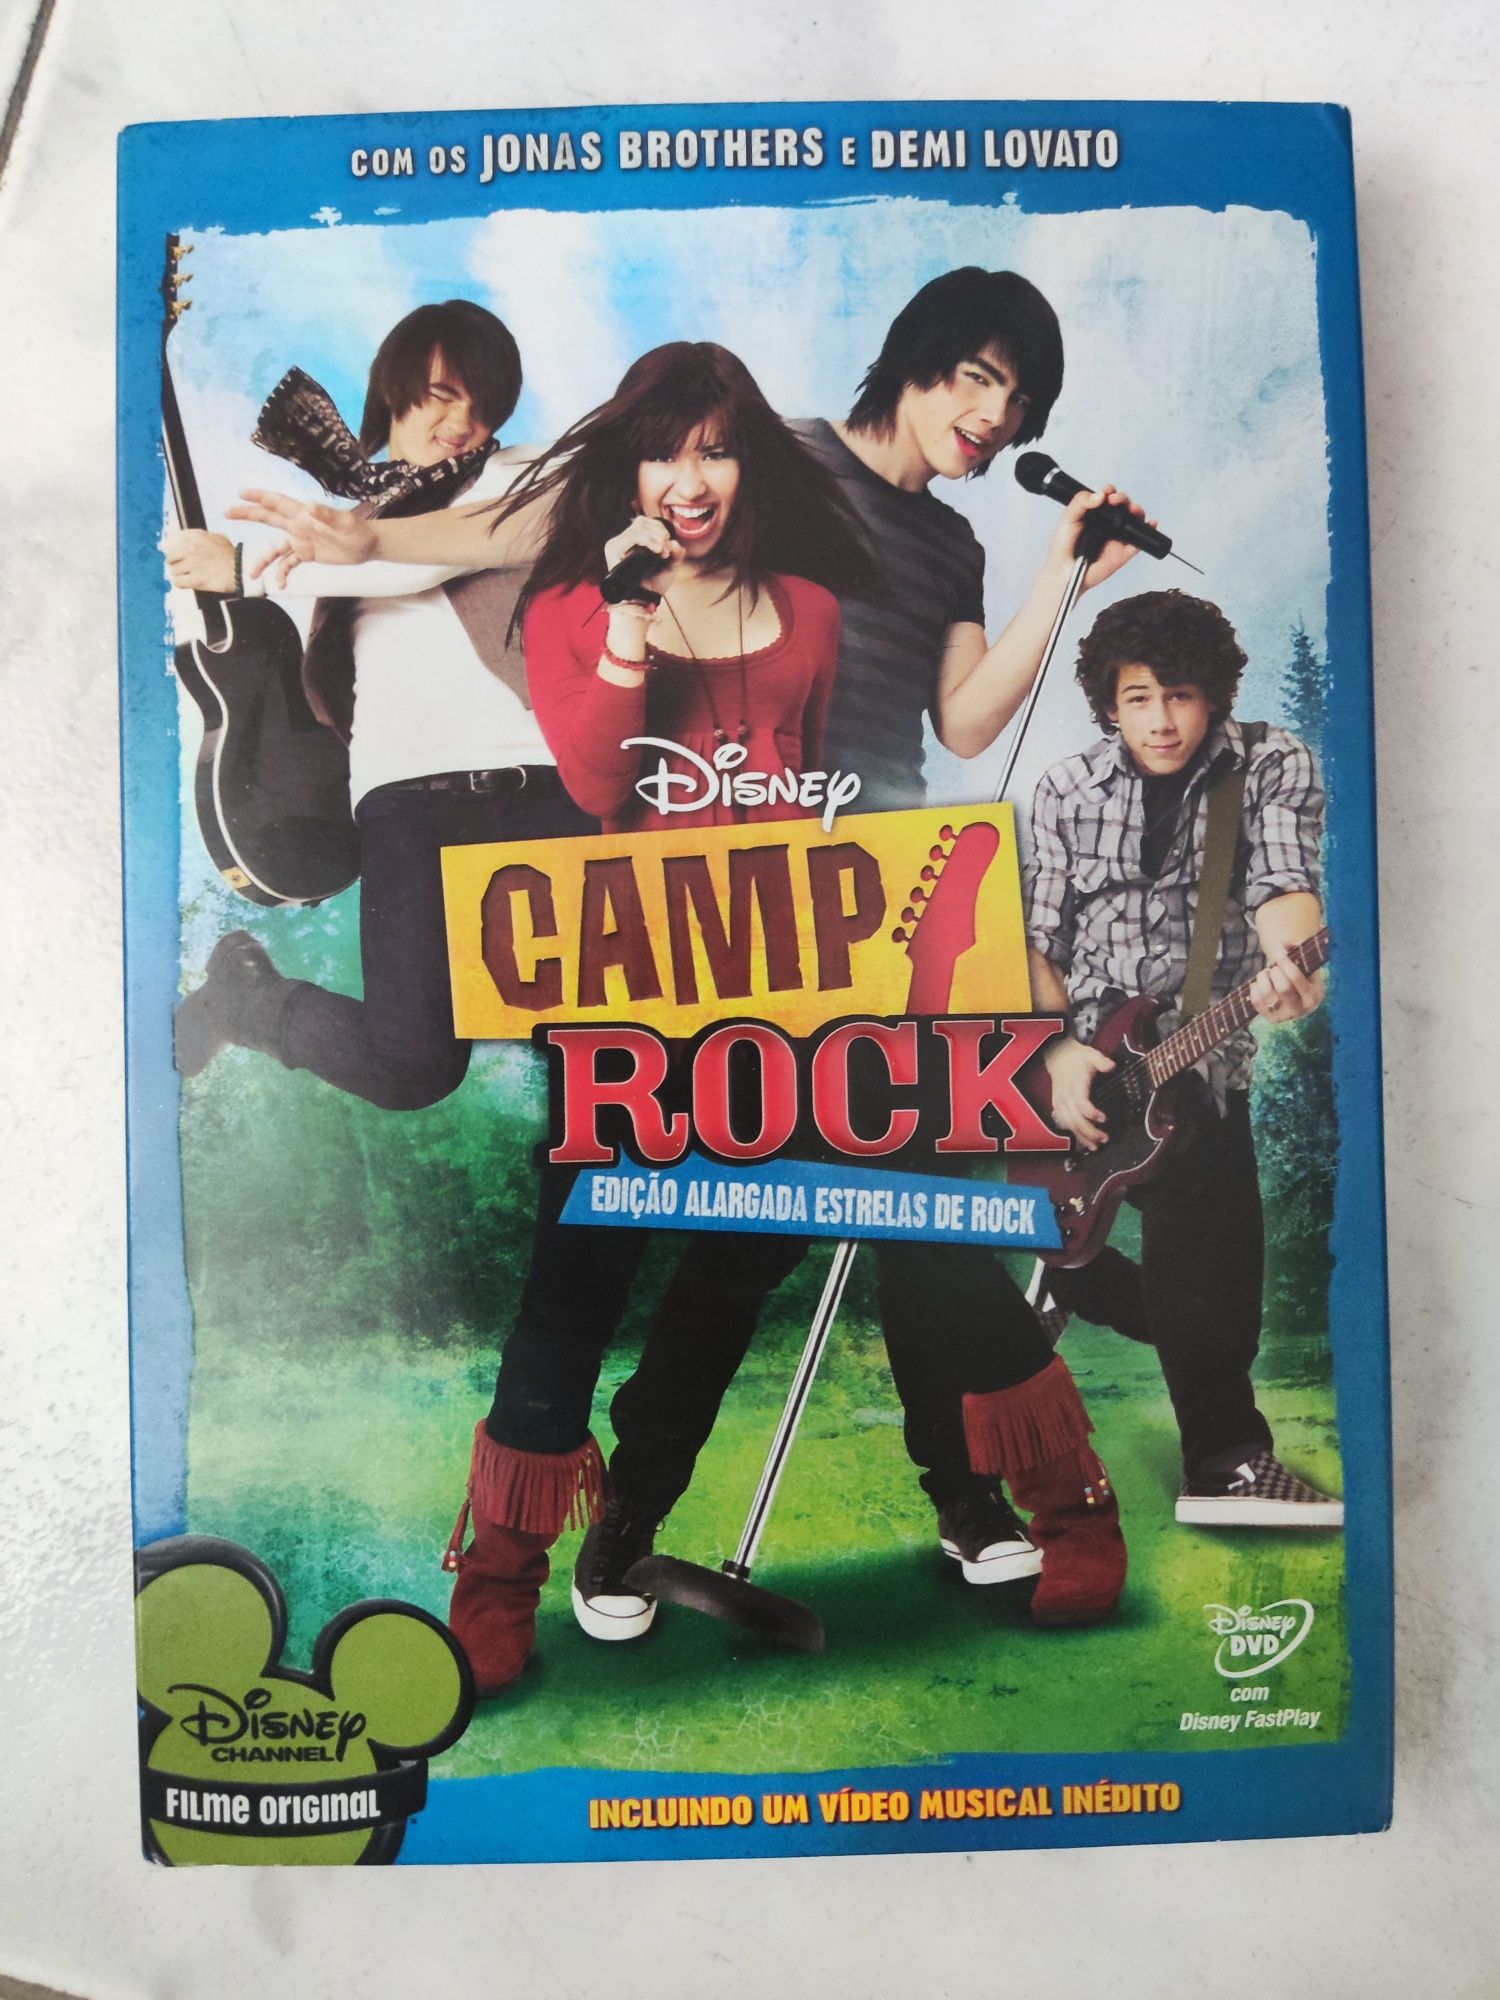 Dvd Camp Rock 2 edição alargada com capa protetora